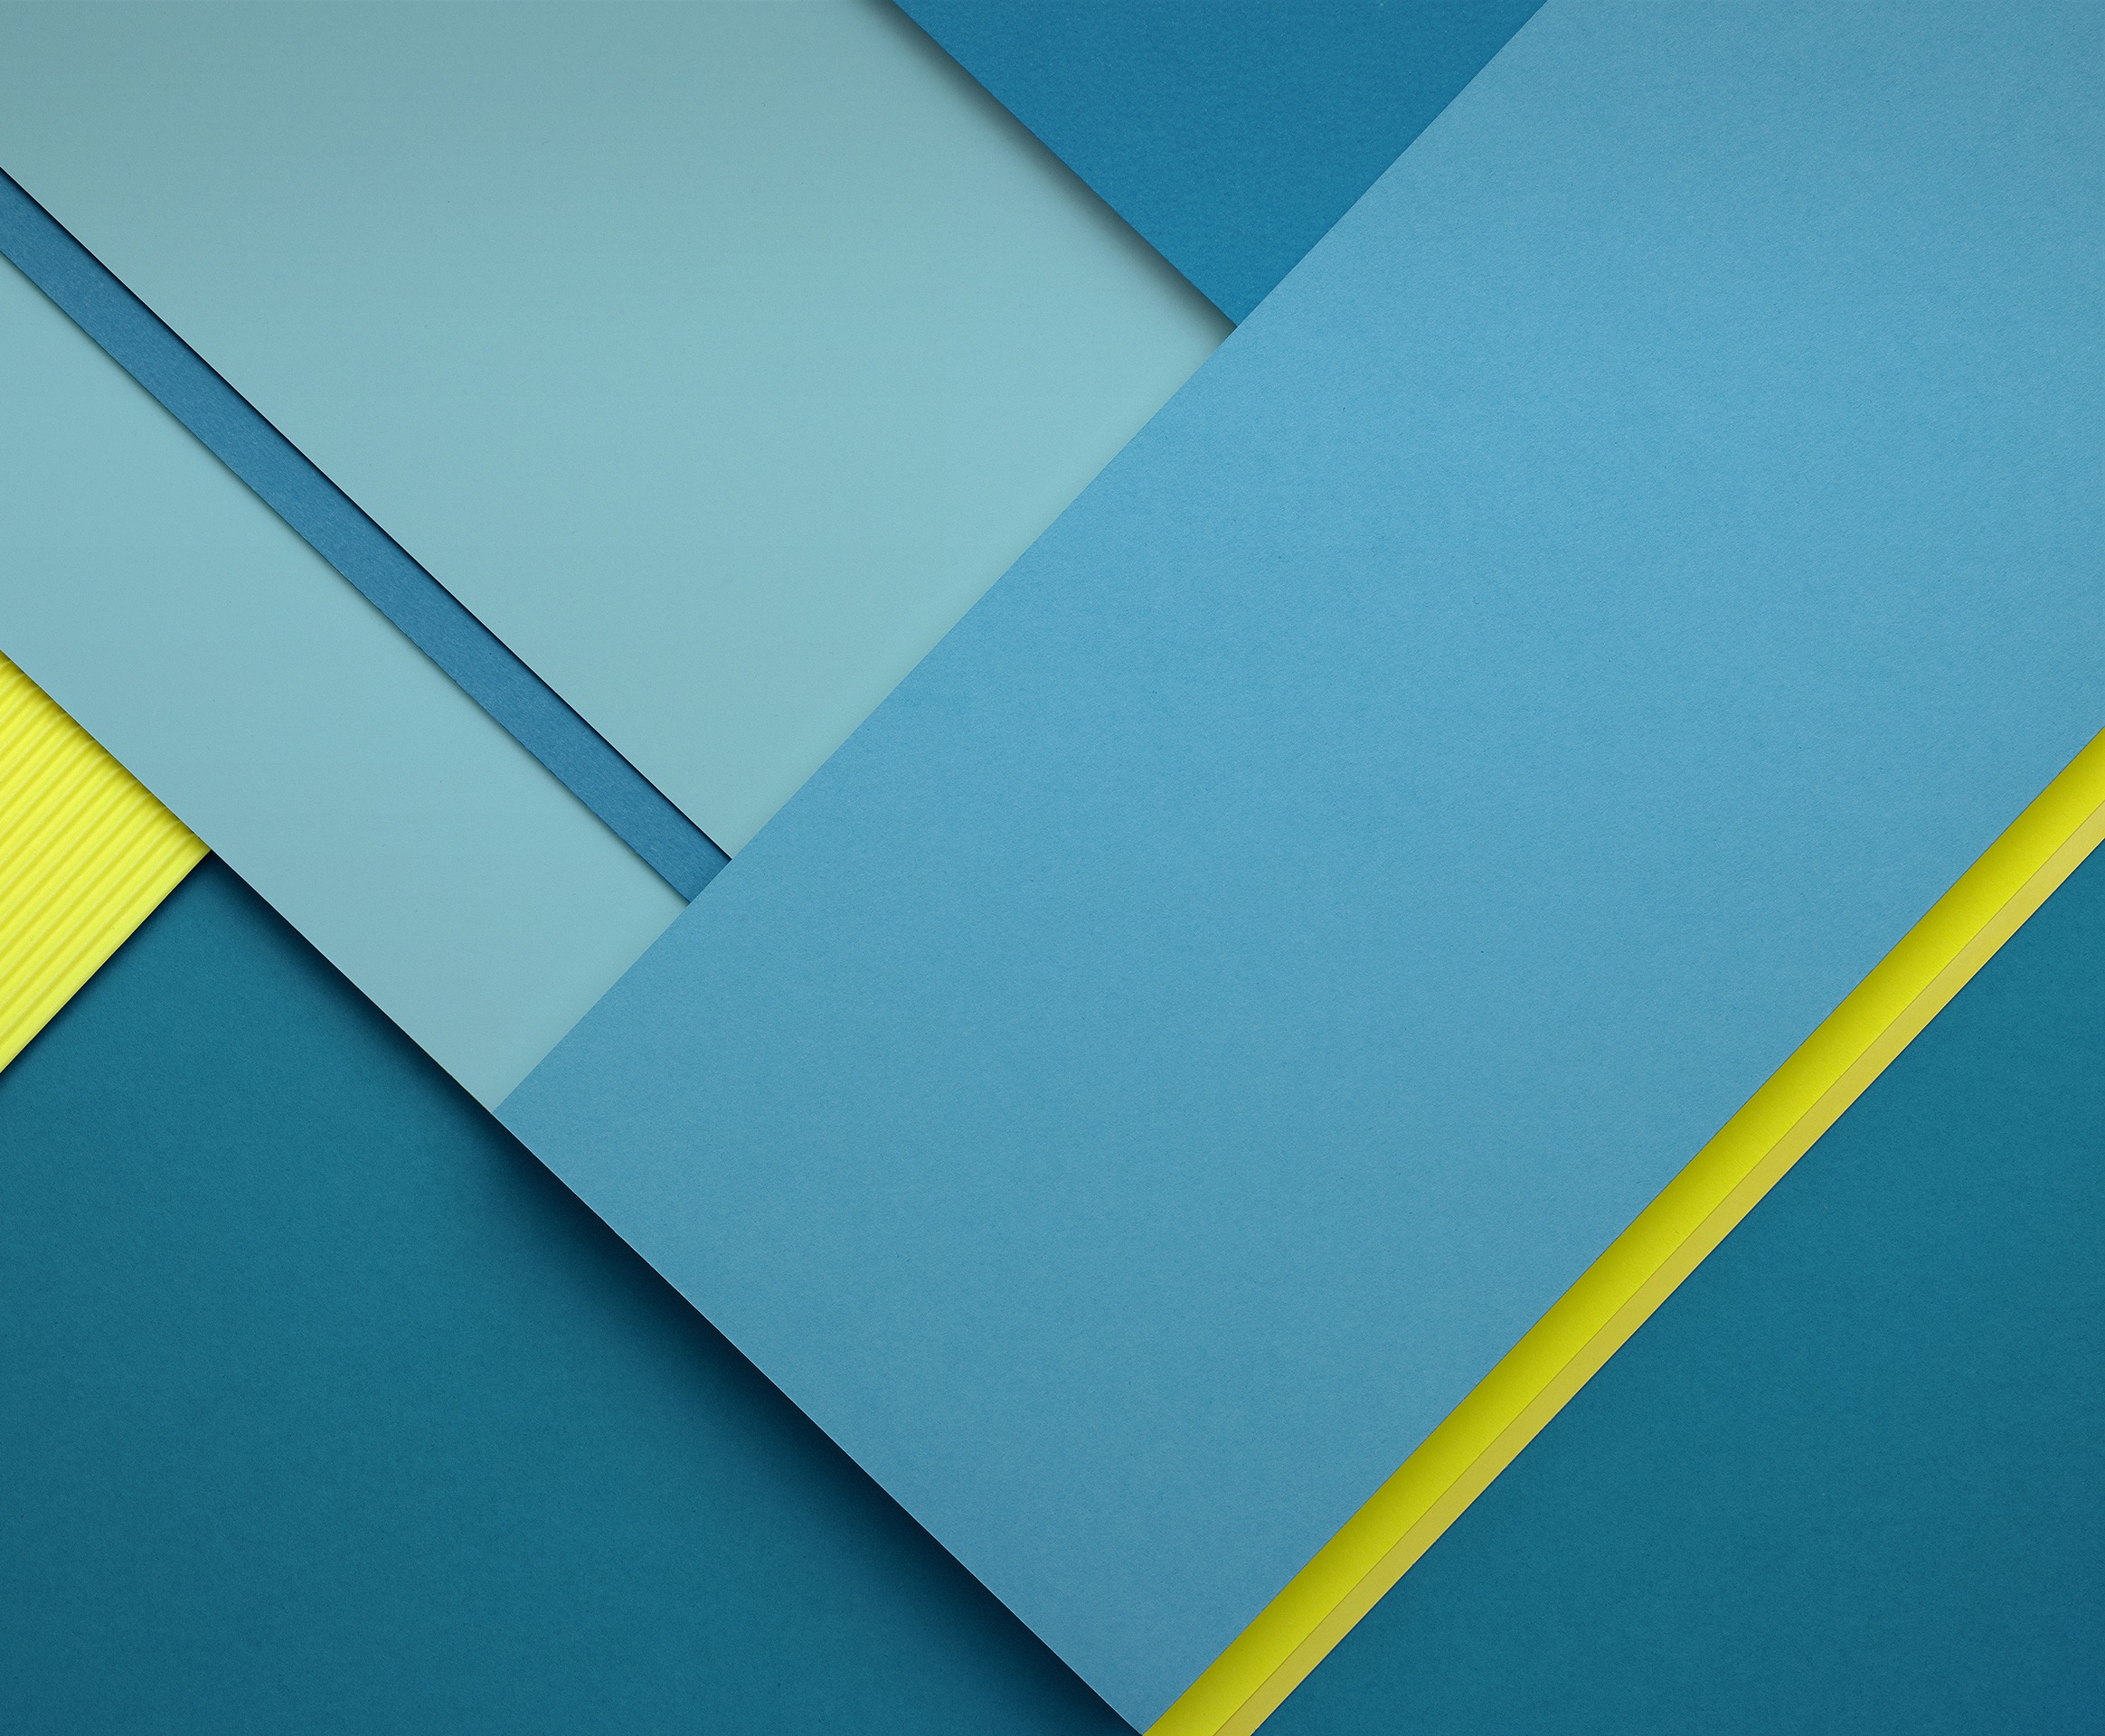 Nexus 7 Wallpapers - Wallpaper Cave